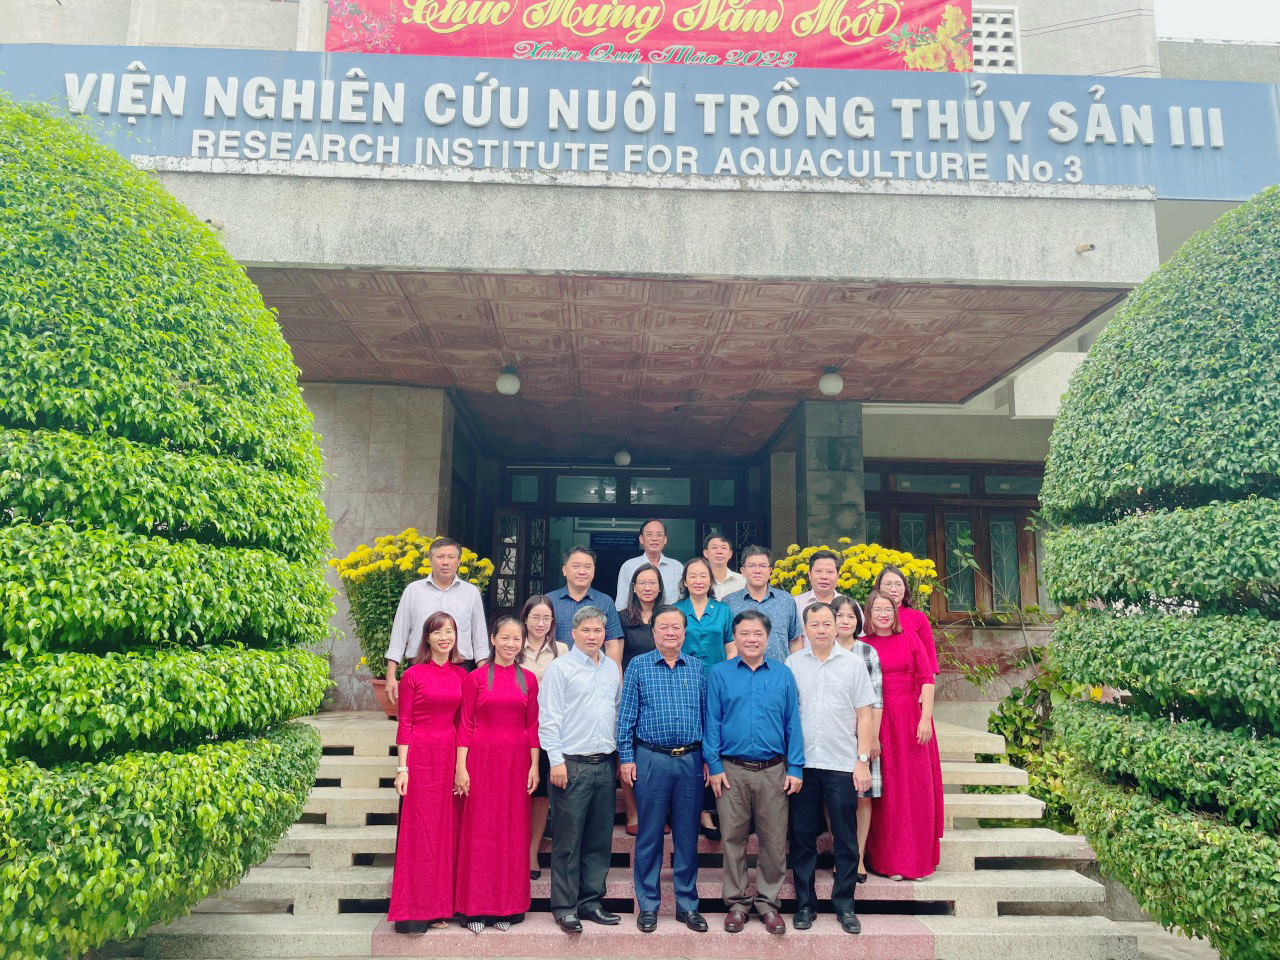 Bộ trưởng Bộ Nông nghiệp và phát triển nông thôn Lê Minh Hoan đến thăm và làm việc tại Viện Nghiên cứu Nuôi trồng thủy sản III TẠI VIỆN NGHIÊN CỨU NUÔI TRỒNG THỦY SẢN III